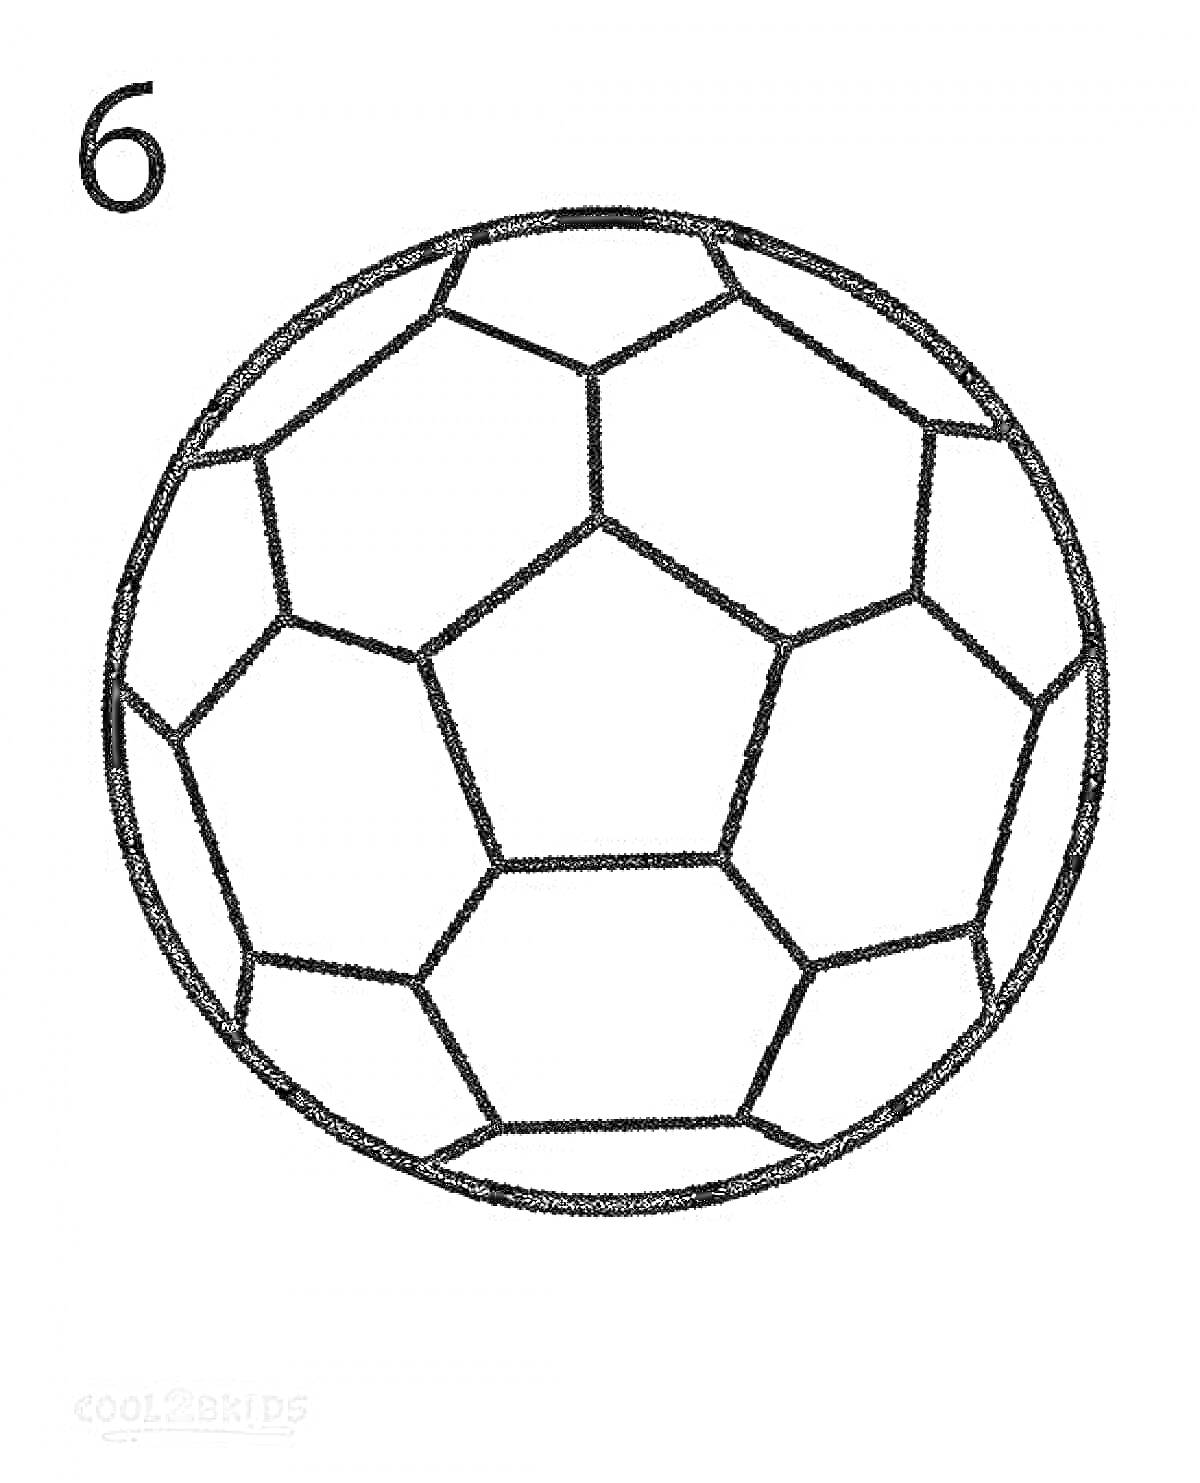 Раскраска футбольный мяч с шестиугольниками и пятиугольниками, цифра 6 в верхнем левом углу